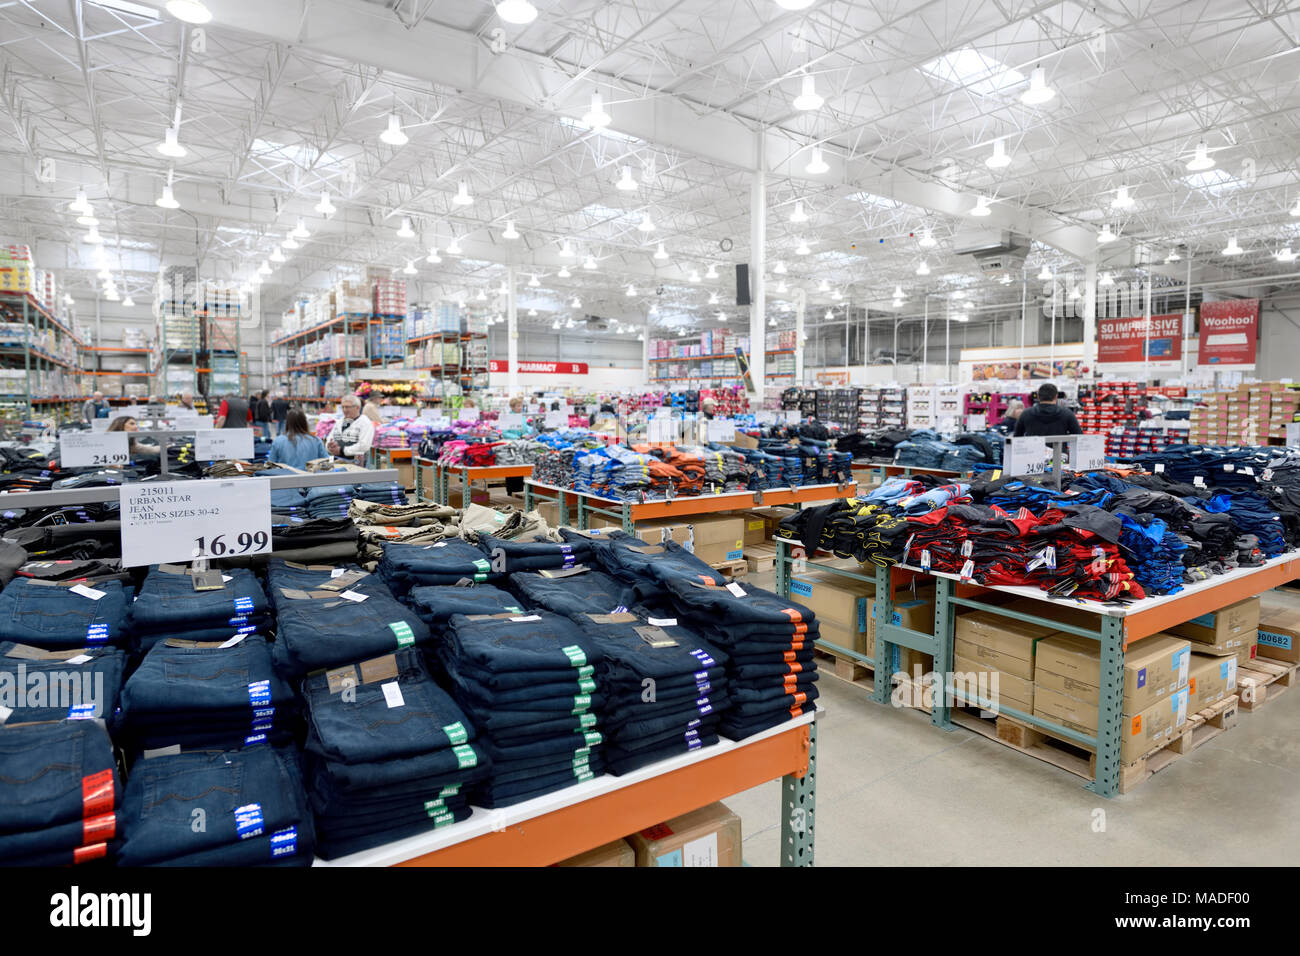 Membresía Costco Wholesale Warehouse el interior de la tienda, jeans en la mens sección de ropa. Columbia Británica, Canadá 2017. Foto de stock